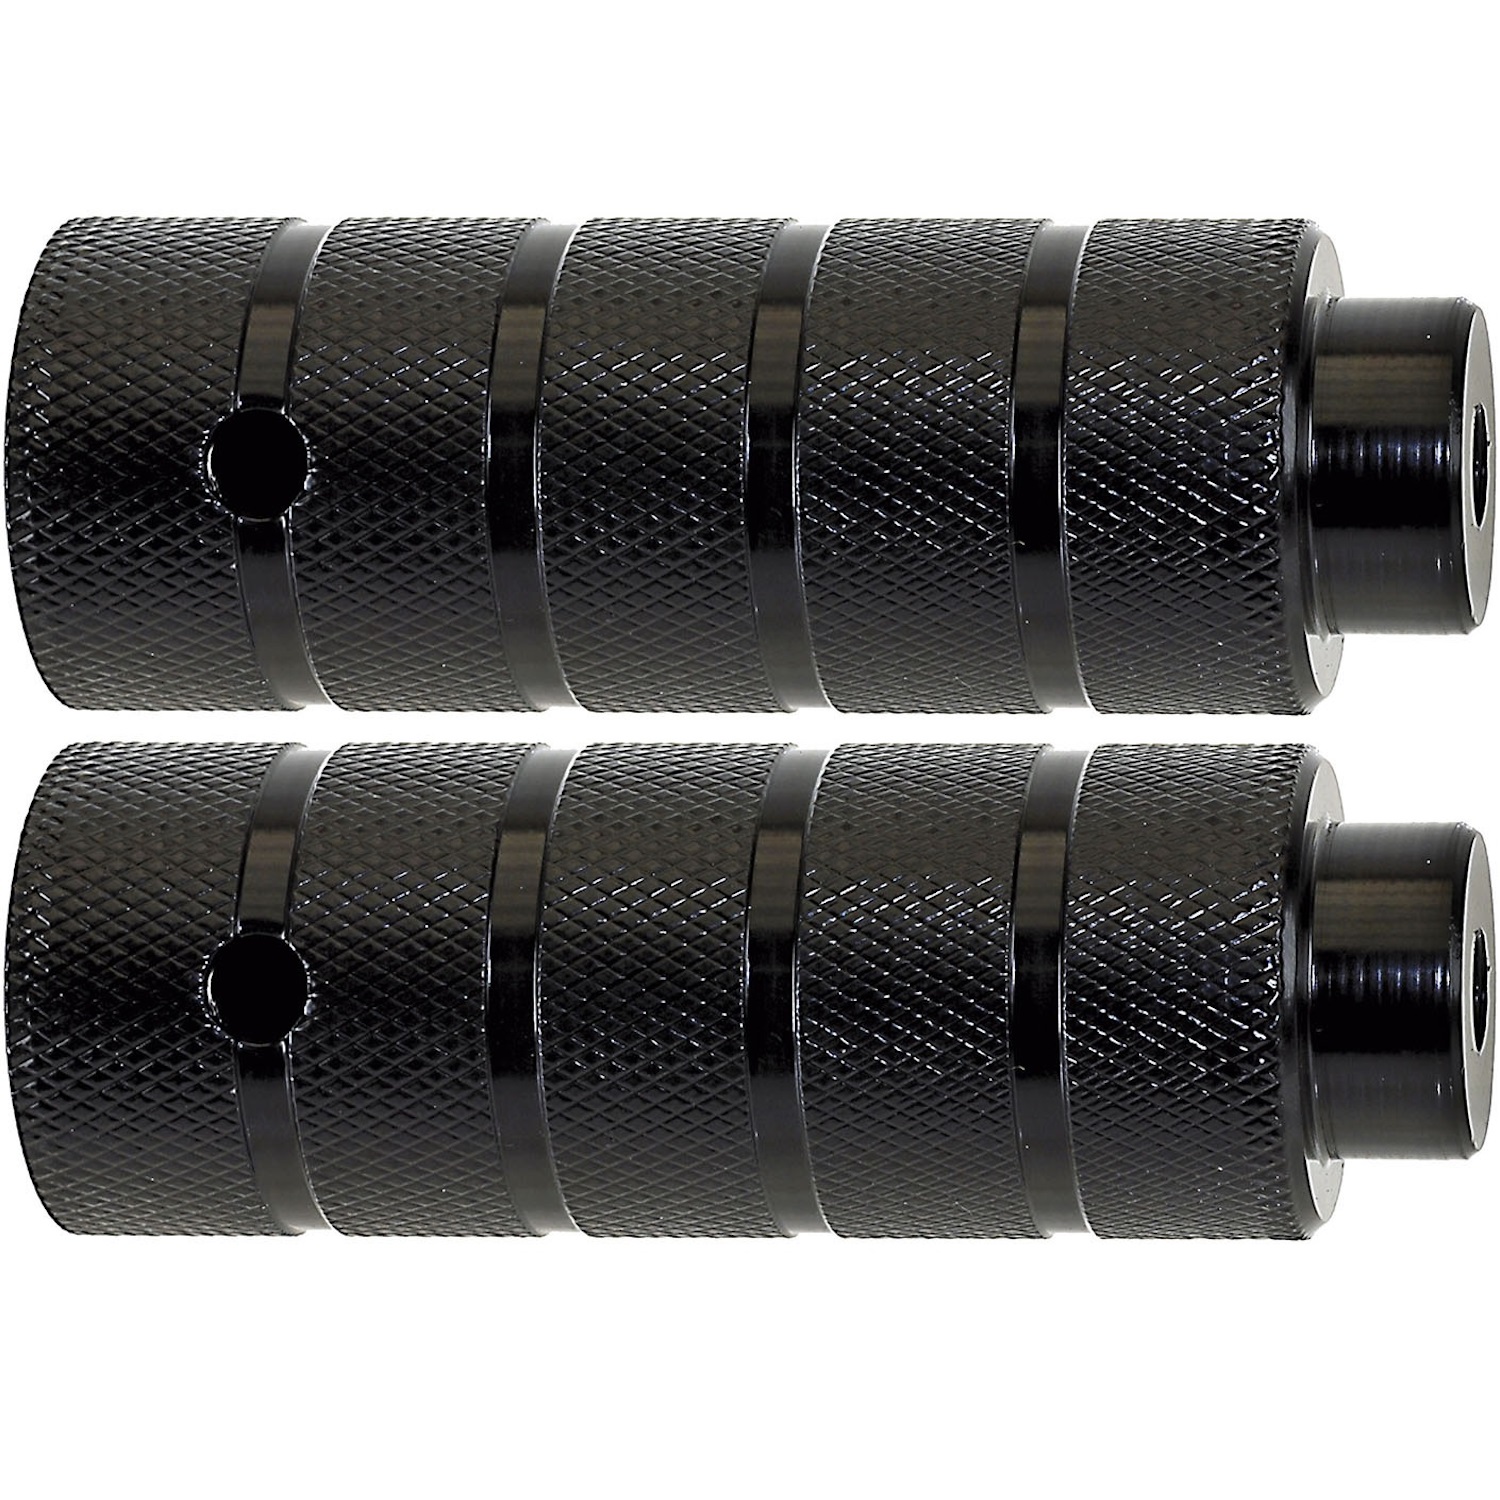 AXLE PEGS aus STAHL für 3/8" x 26 TPI, 38 x 110 mm in schwarz